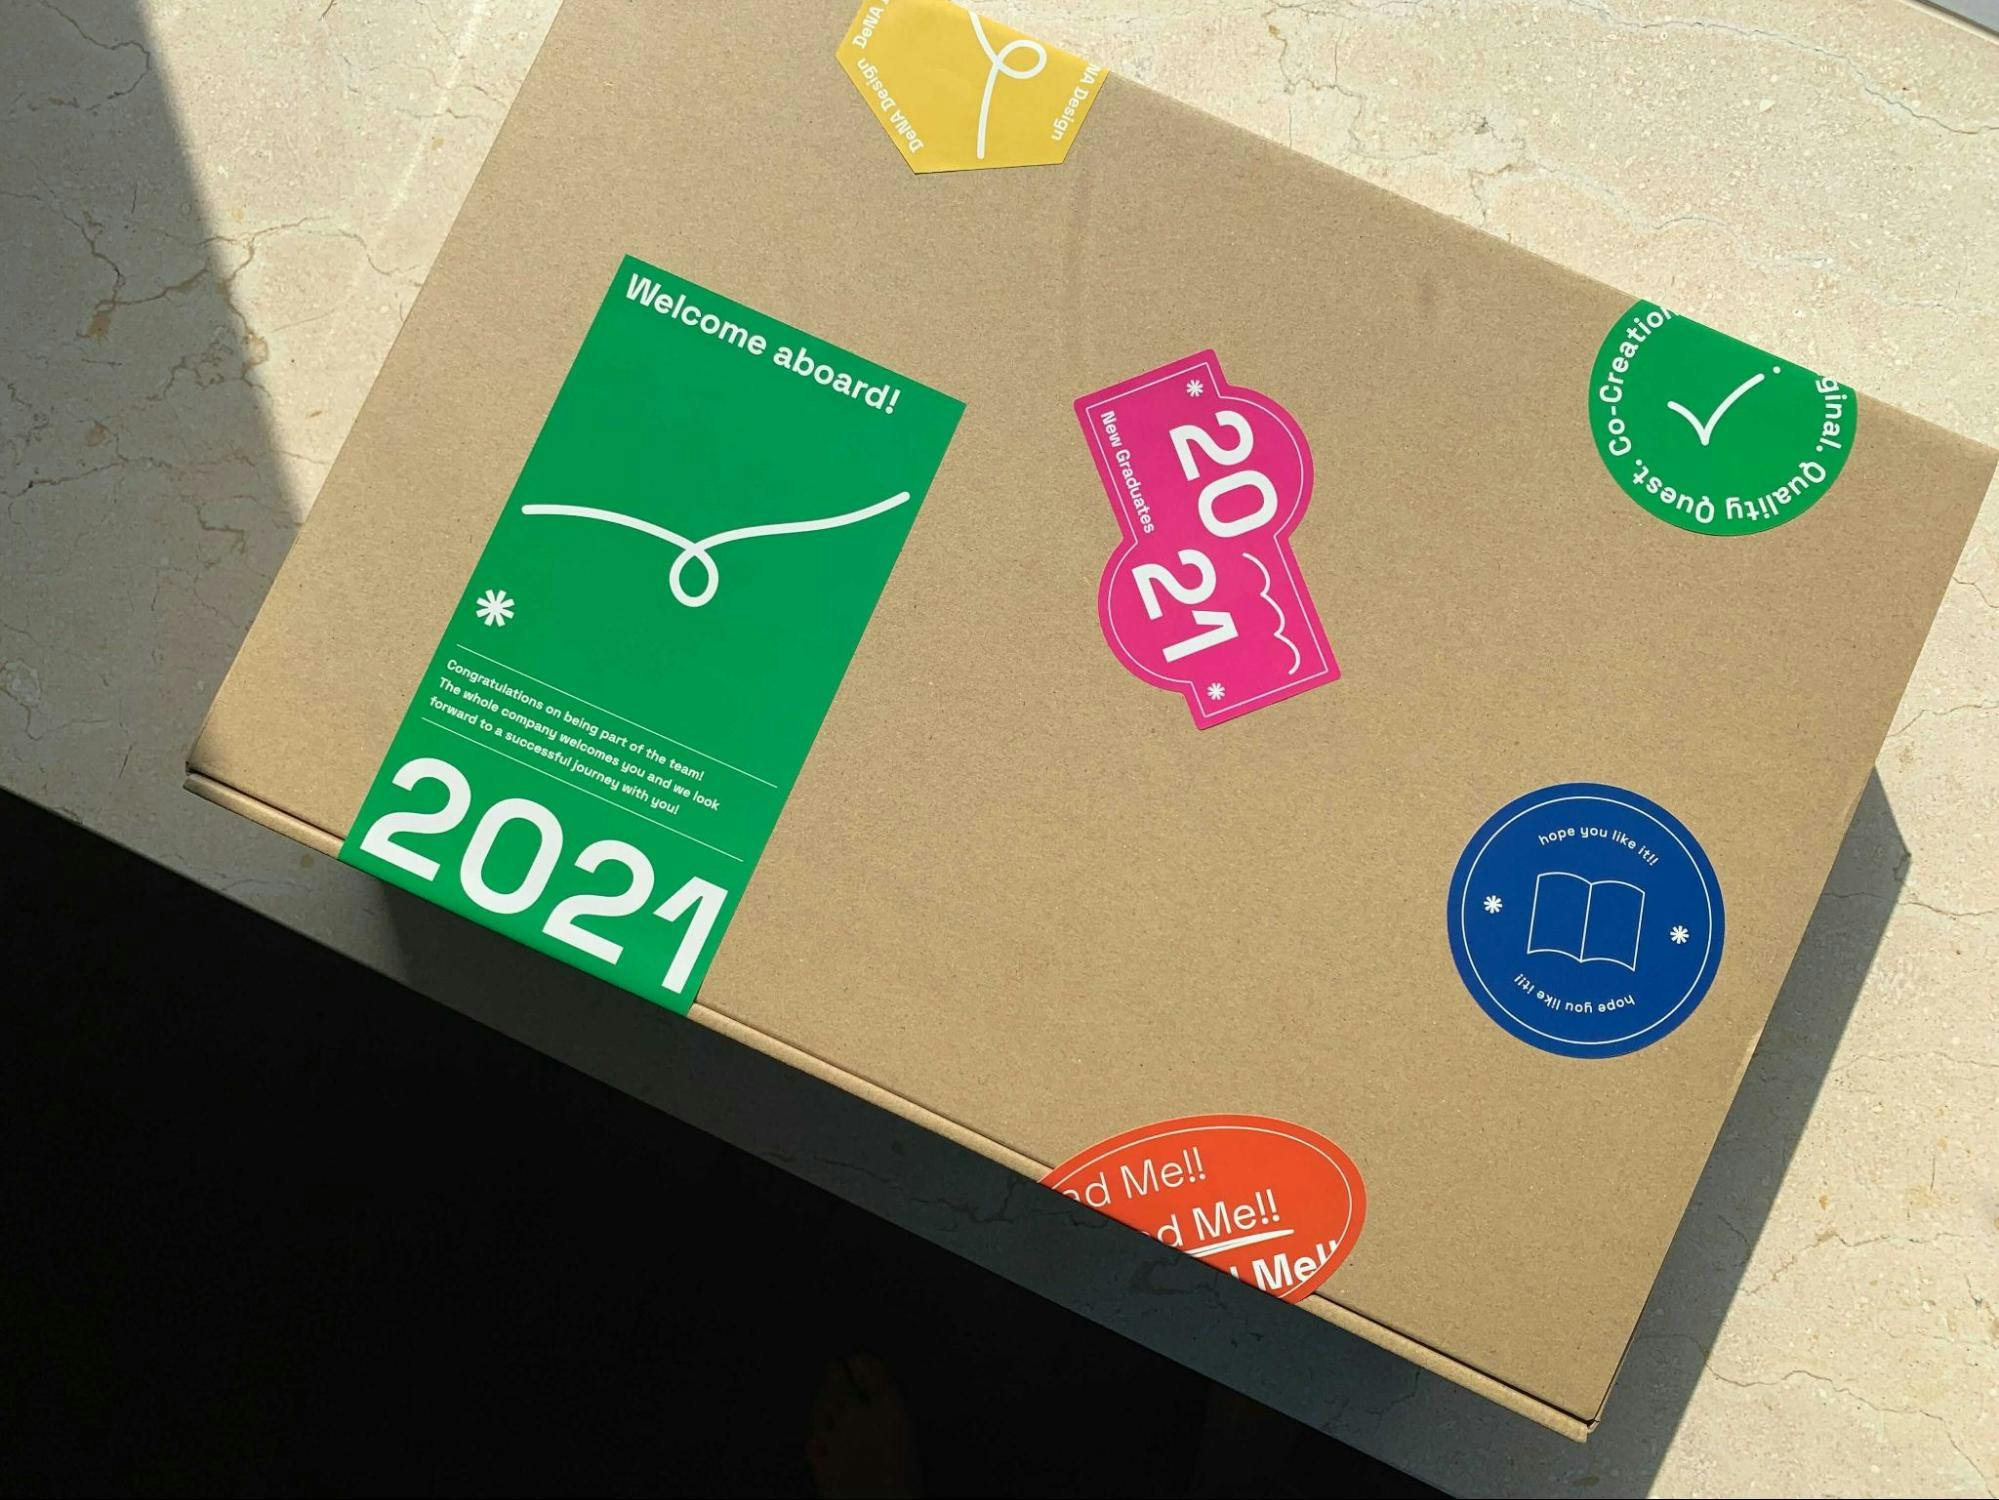 新卒メンバーの自宅に送付した箱の外装の写真。「2021」と書かれたものなどカラフルなシールが5枚貼られている。